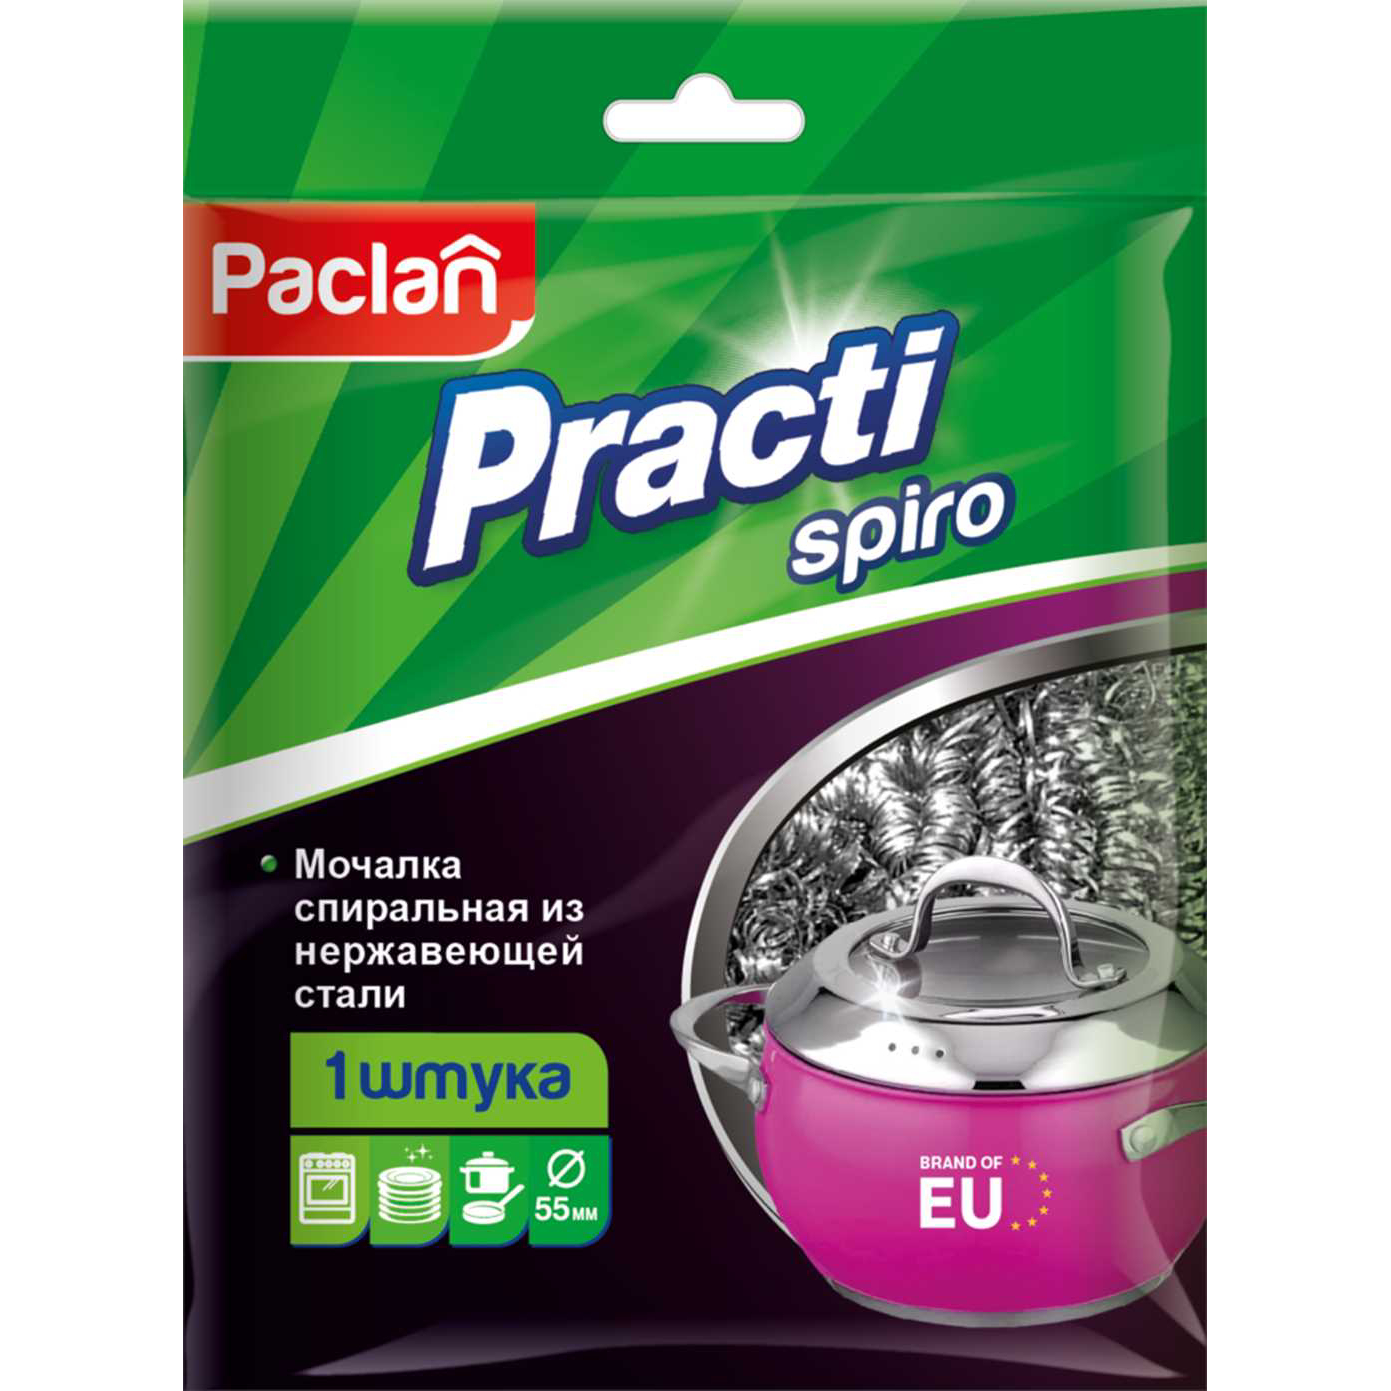 Мочалка Paclan металлическая для хозяйственных нужд, 1 шт paclan practi spiro мочалка металлическая 1